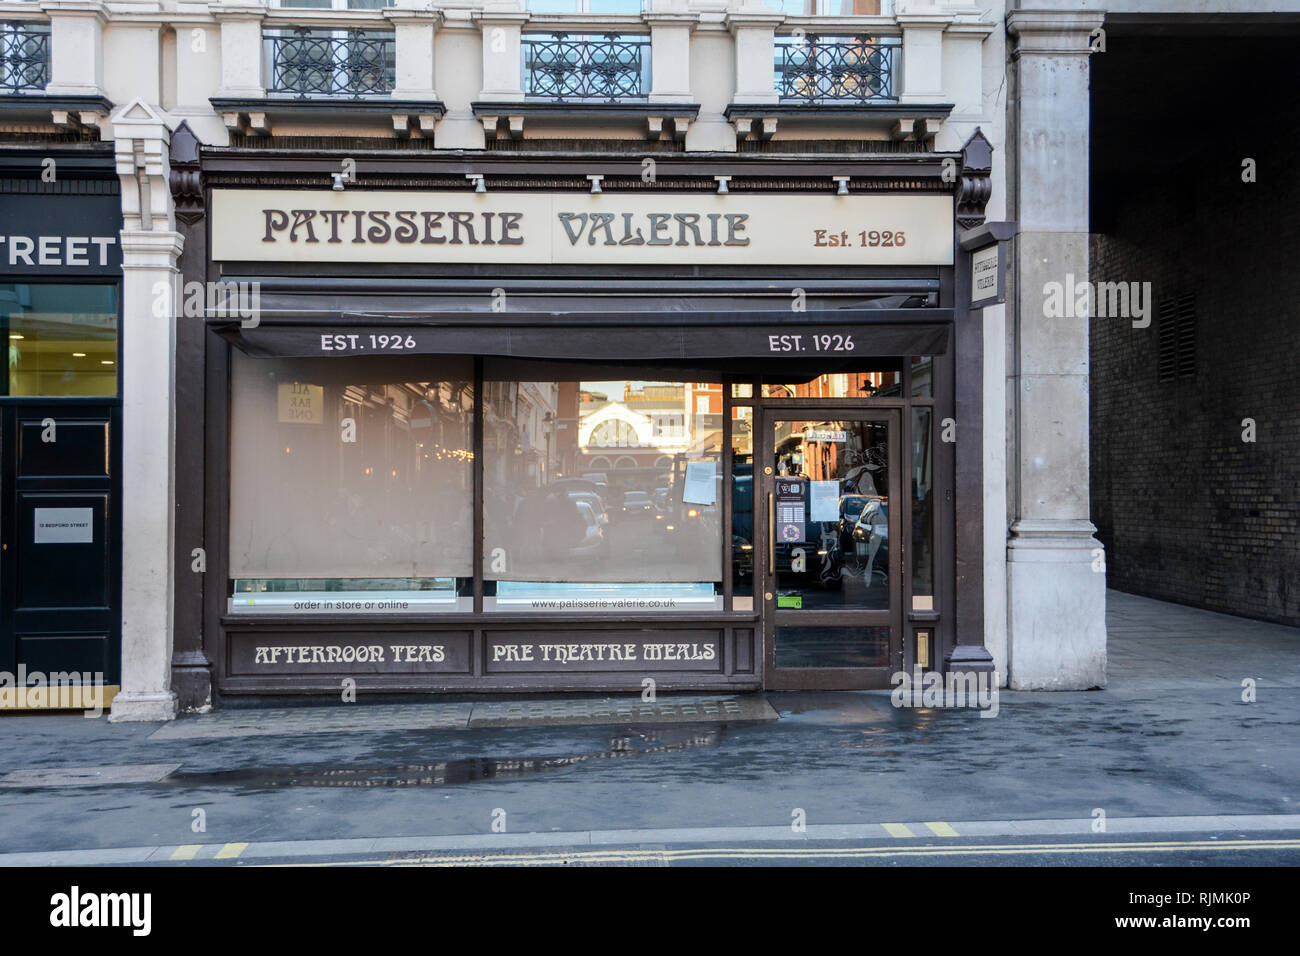 El exterior de la actualmente cerrada Patisserie Valerie cafe cadena, London, UK Foto de stock